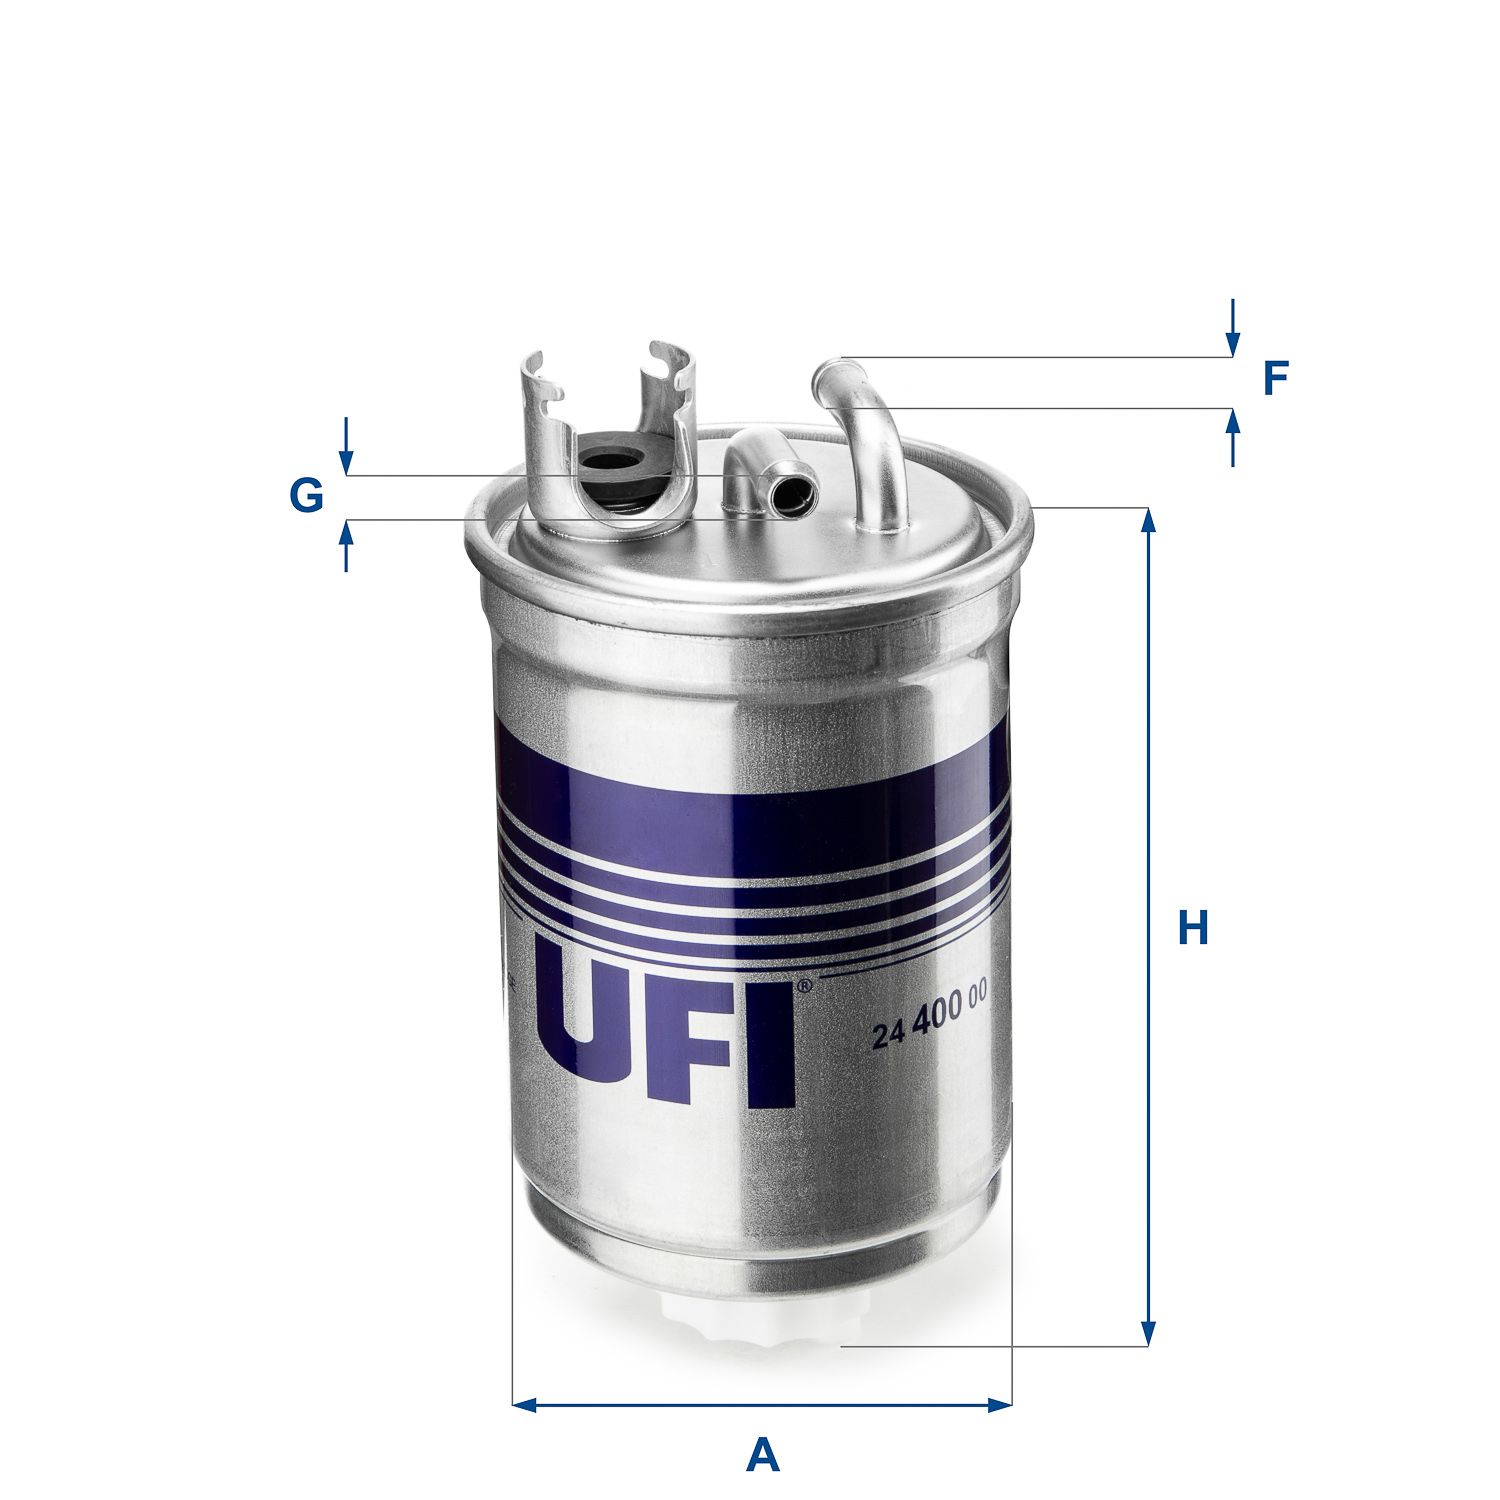 Palivový filter UFI 24.400.00